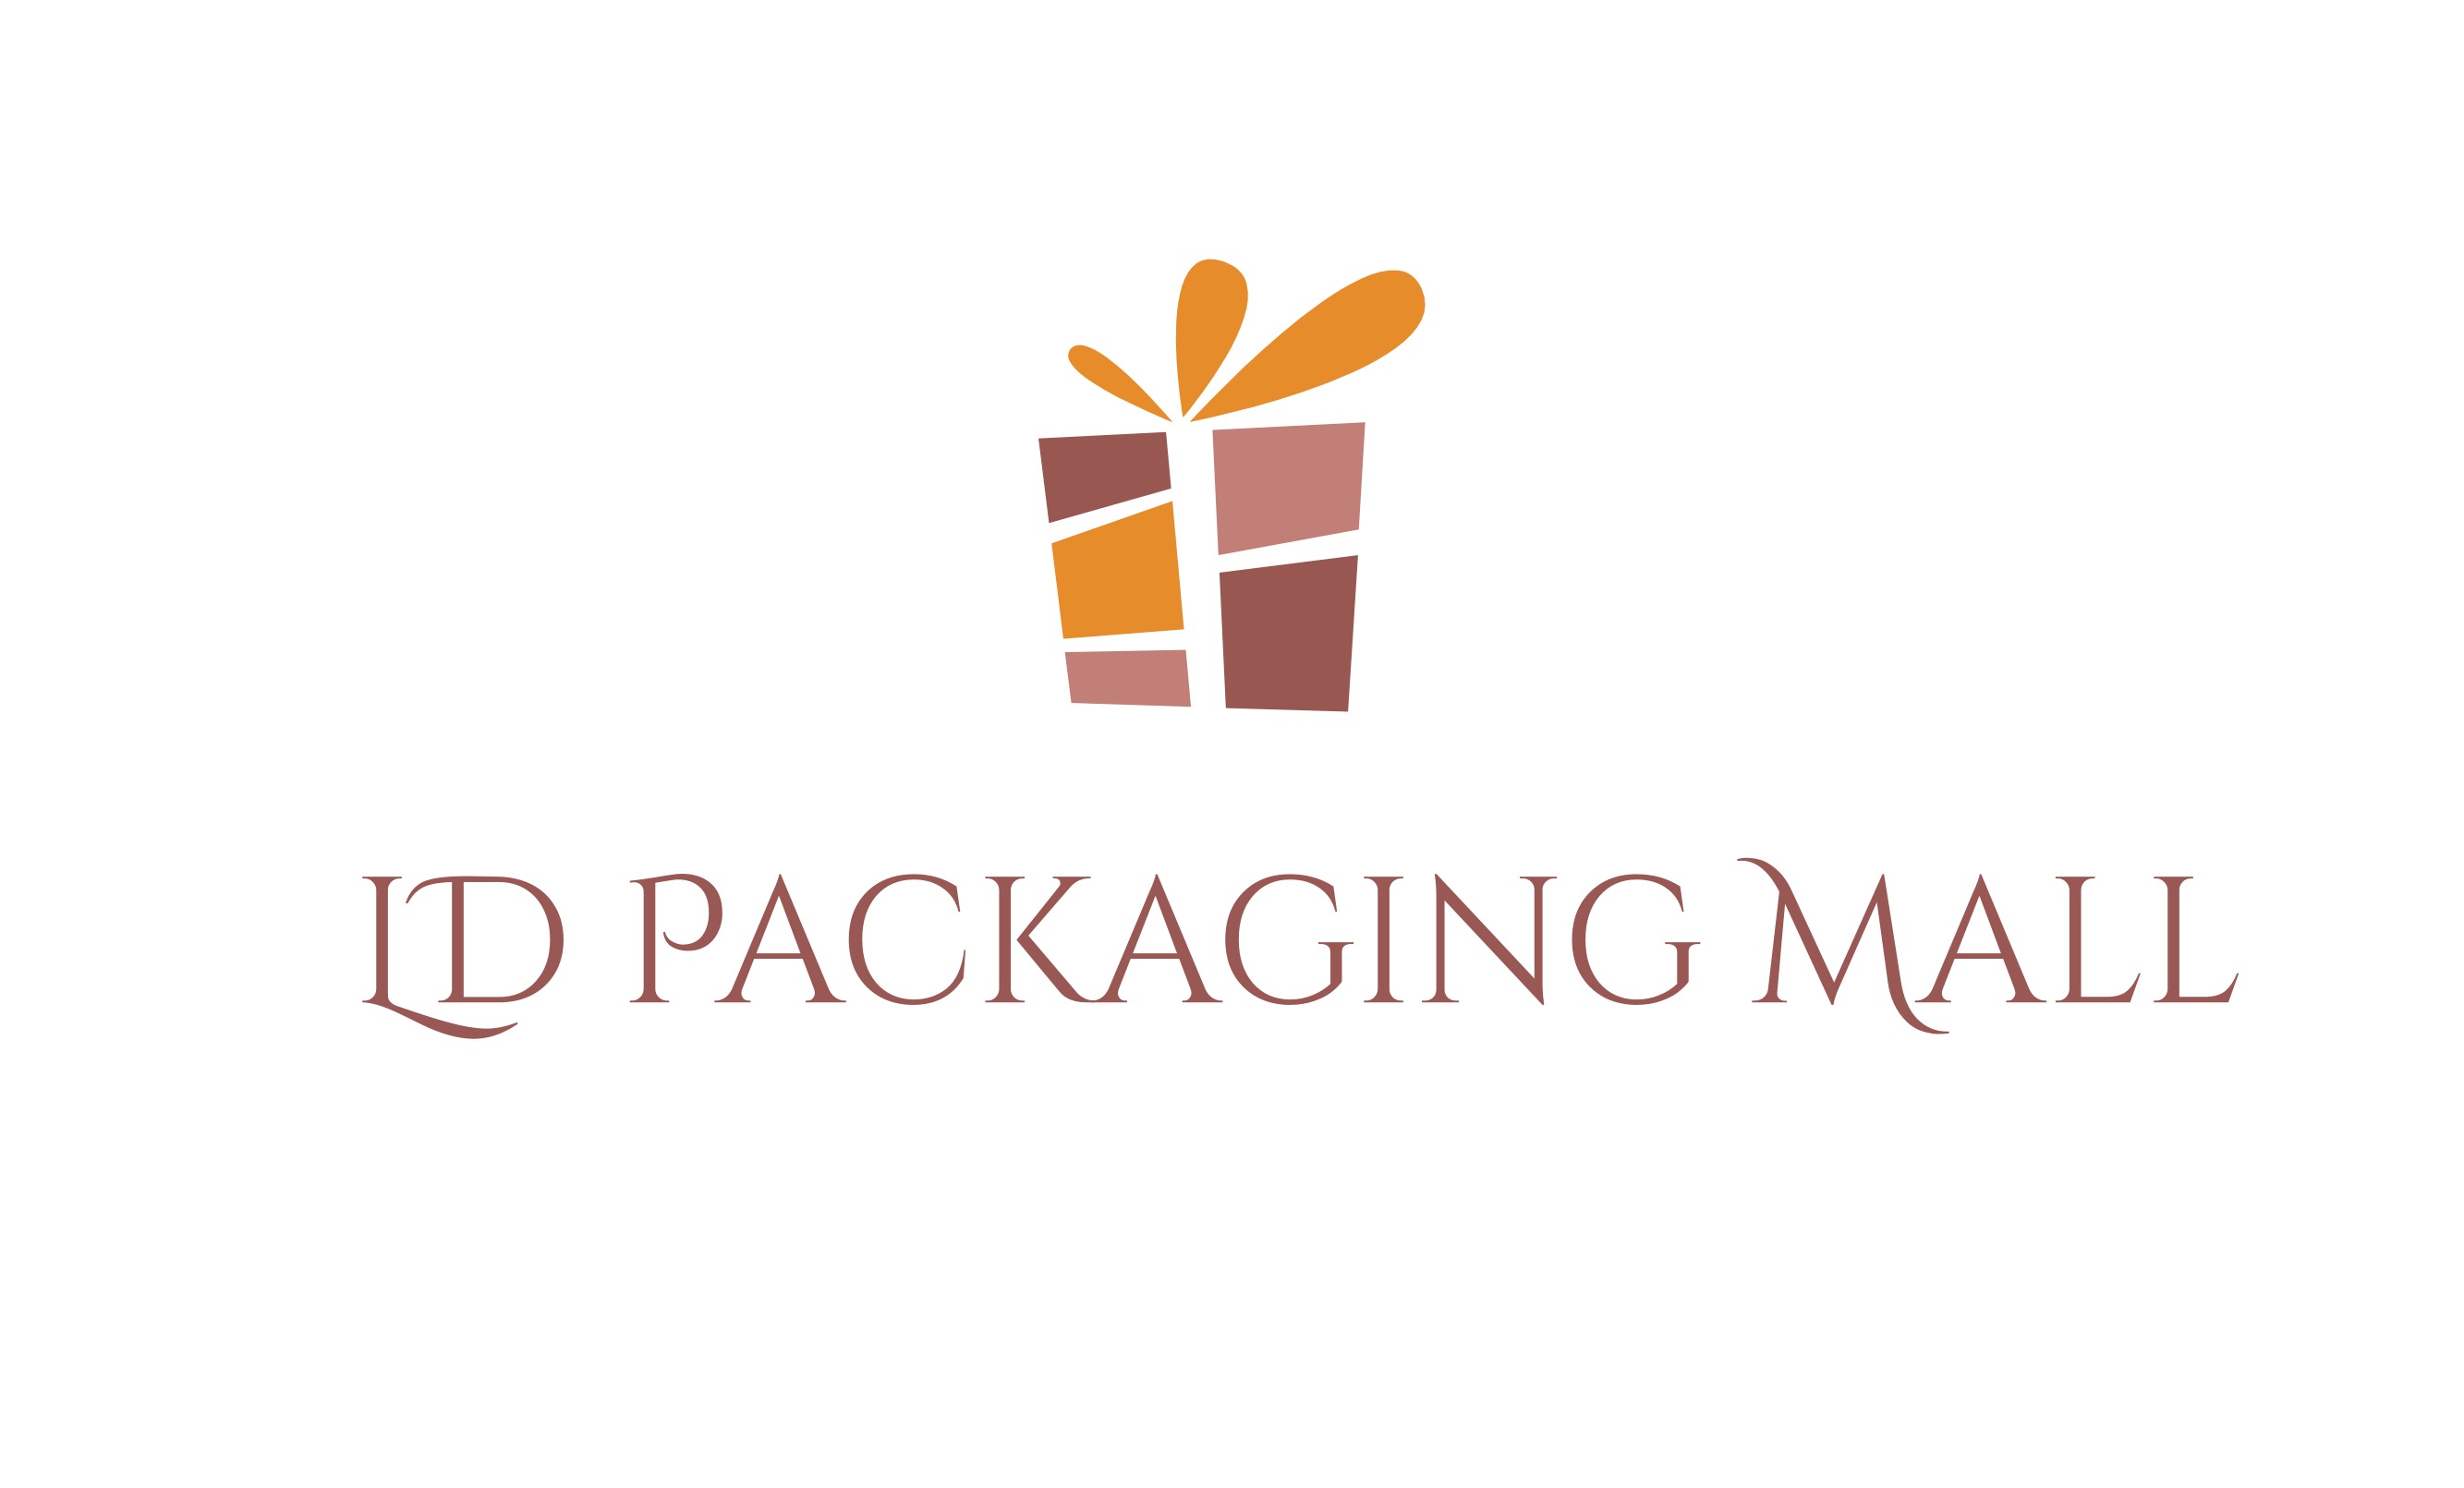 Ld packagingmall